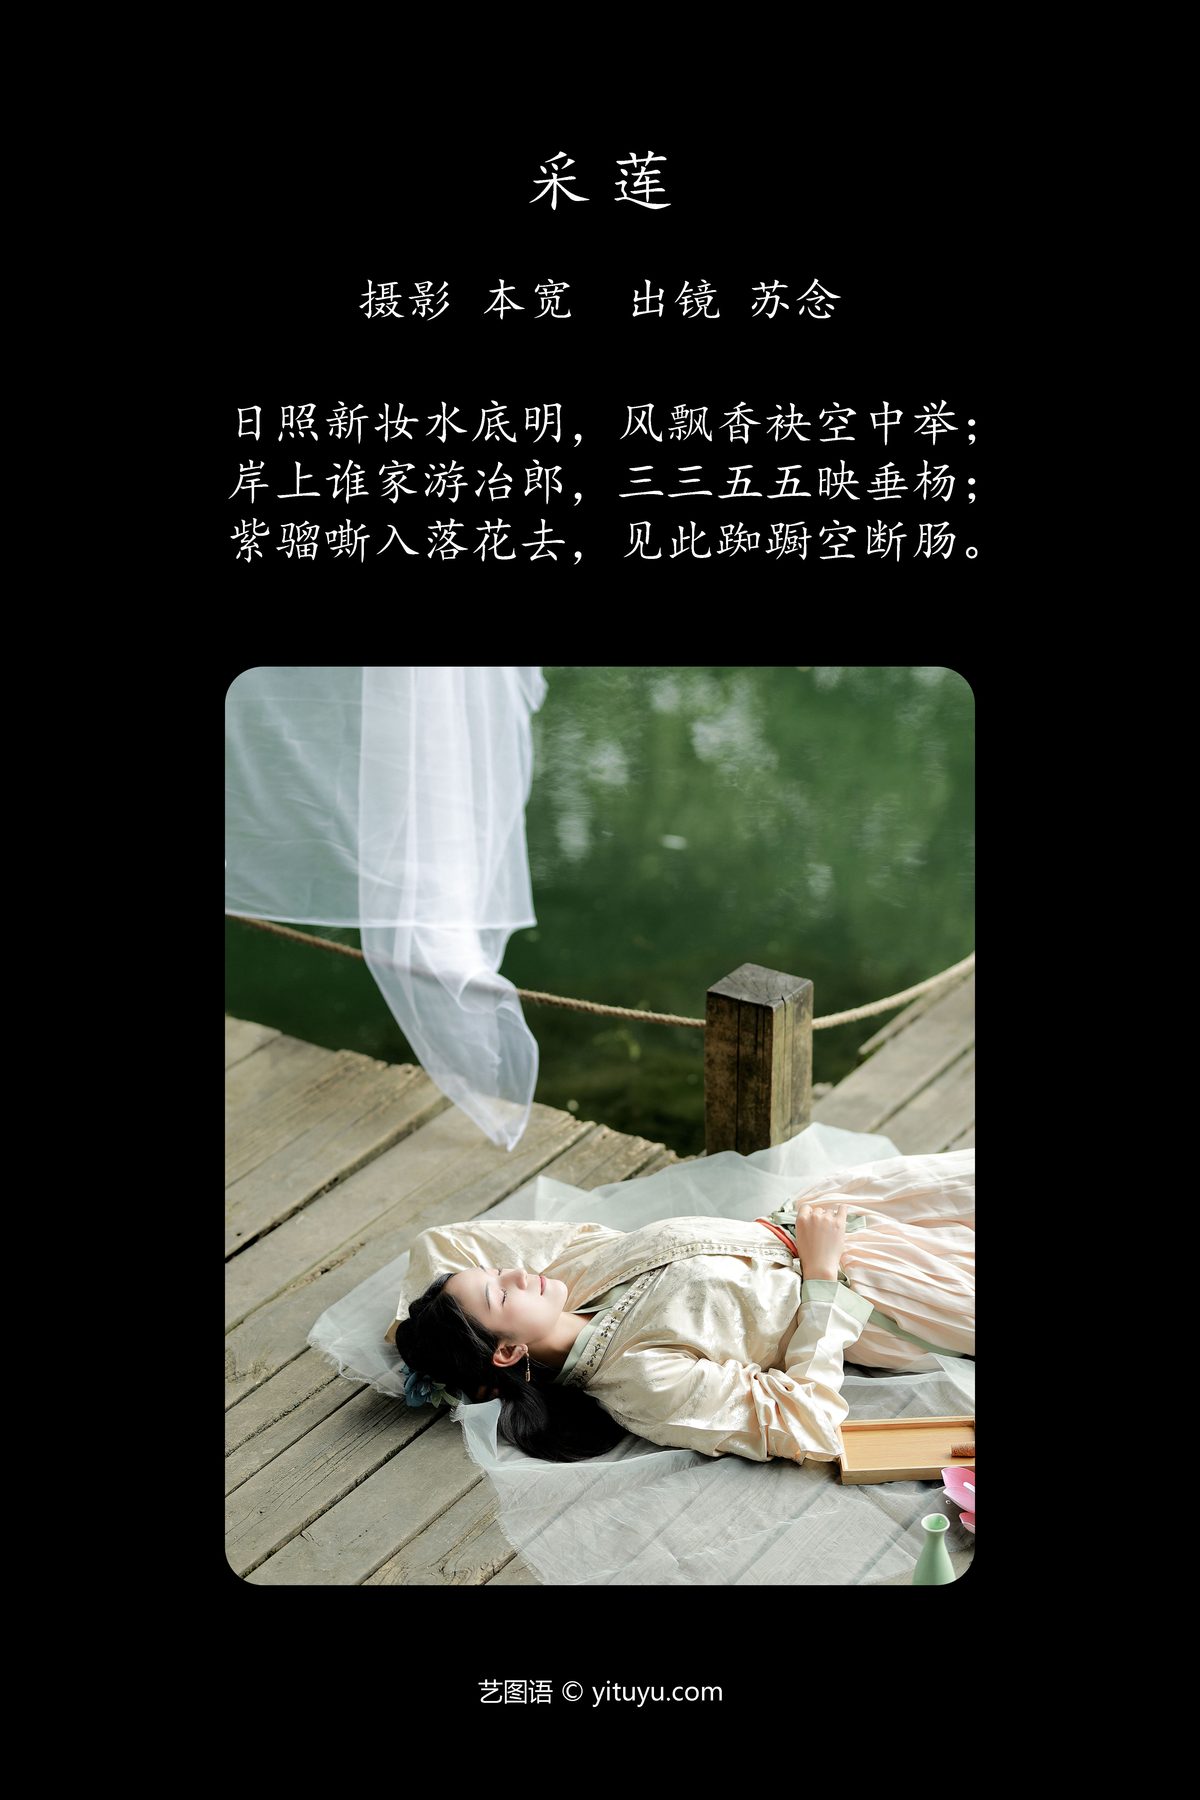 YiTuYu艺图语 Vol 4863 Chang Nian W 0001 6641556539.jpg